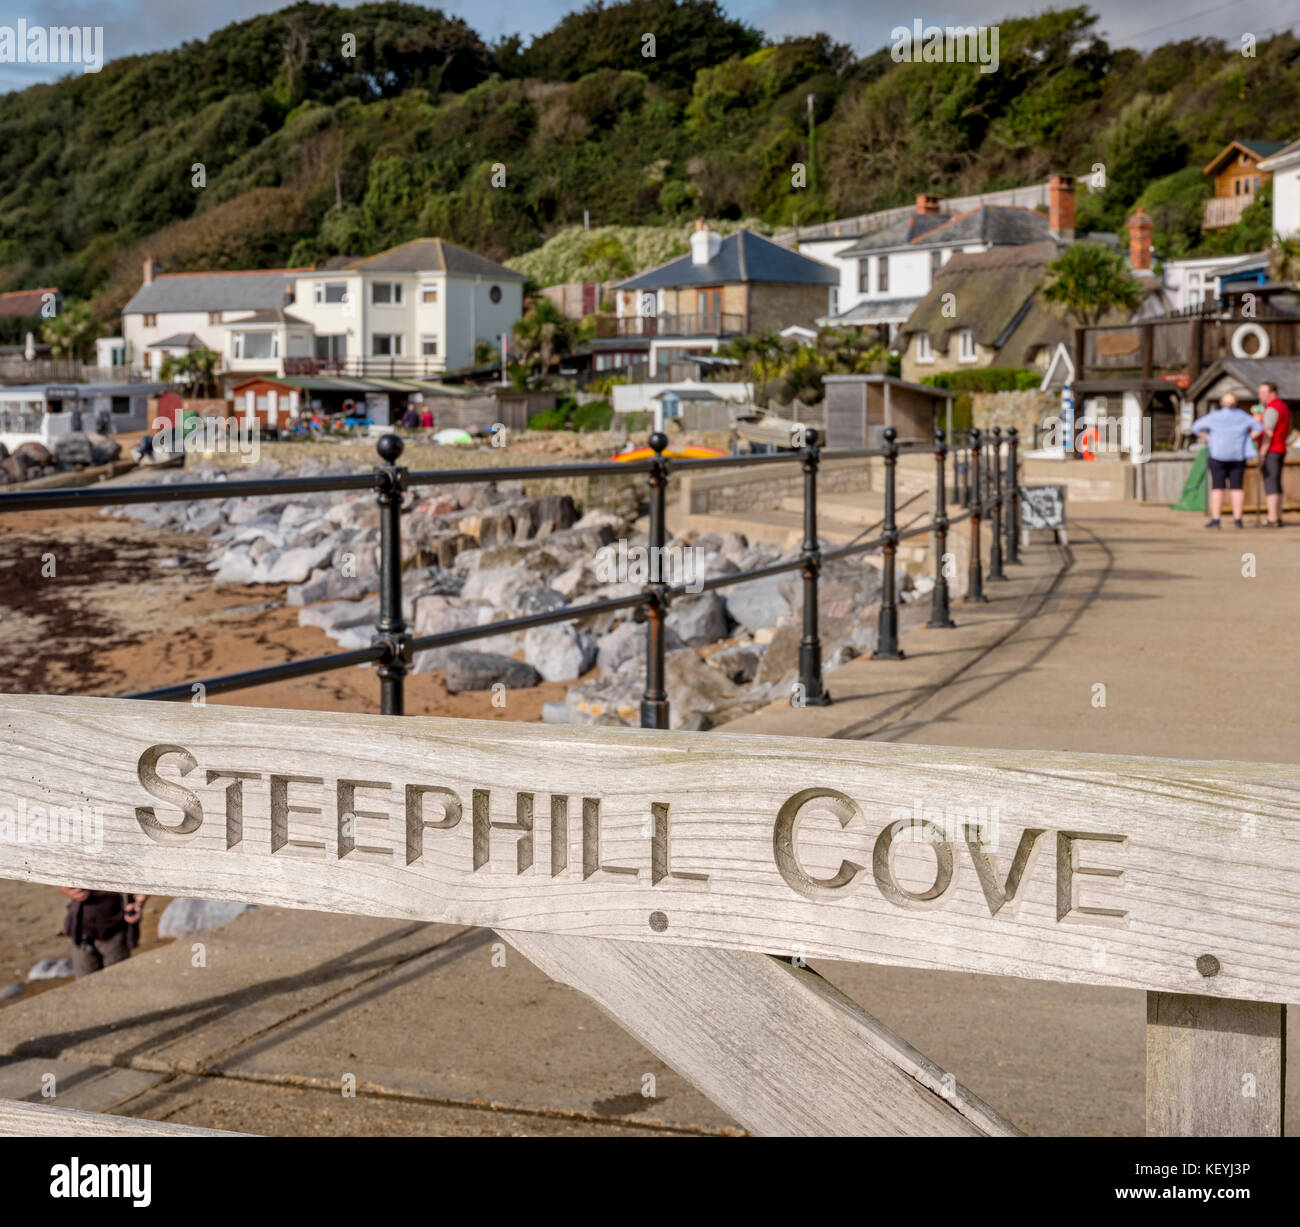 Steephill Bucht auf der Isle of Wight in der Nähe von Ventnor. Die Bucht kann nur zu Fuß von Besuchern erreicht werden. Stockfoto